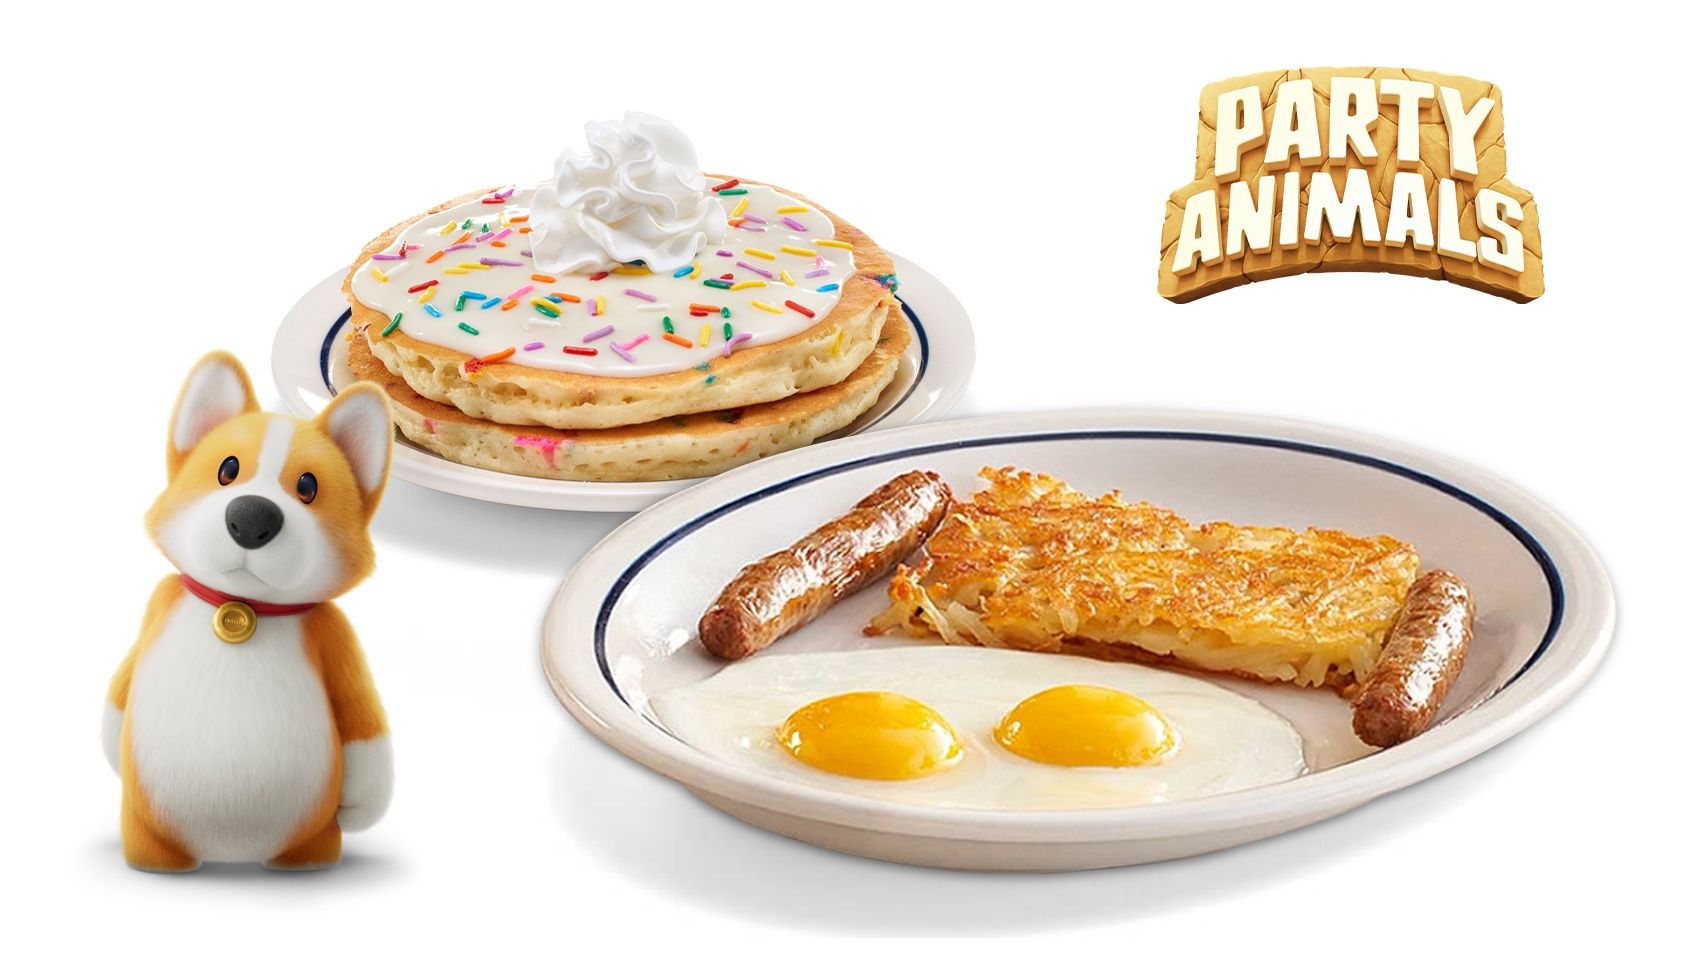 Party Animals Pancake Banner Image